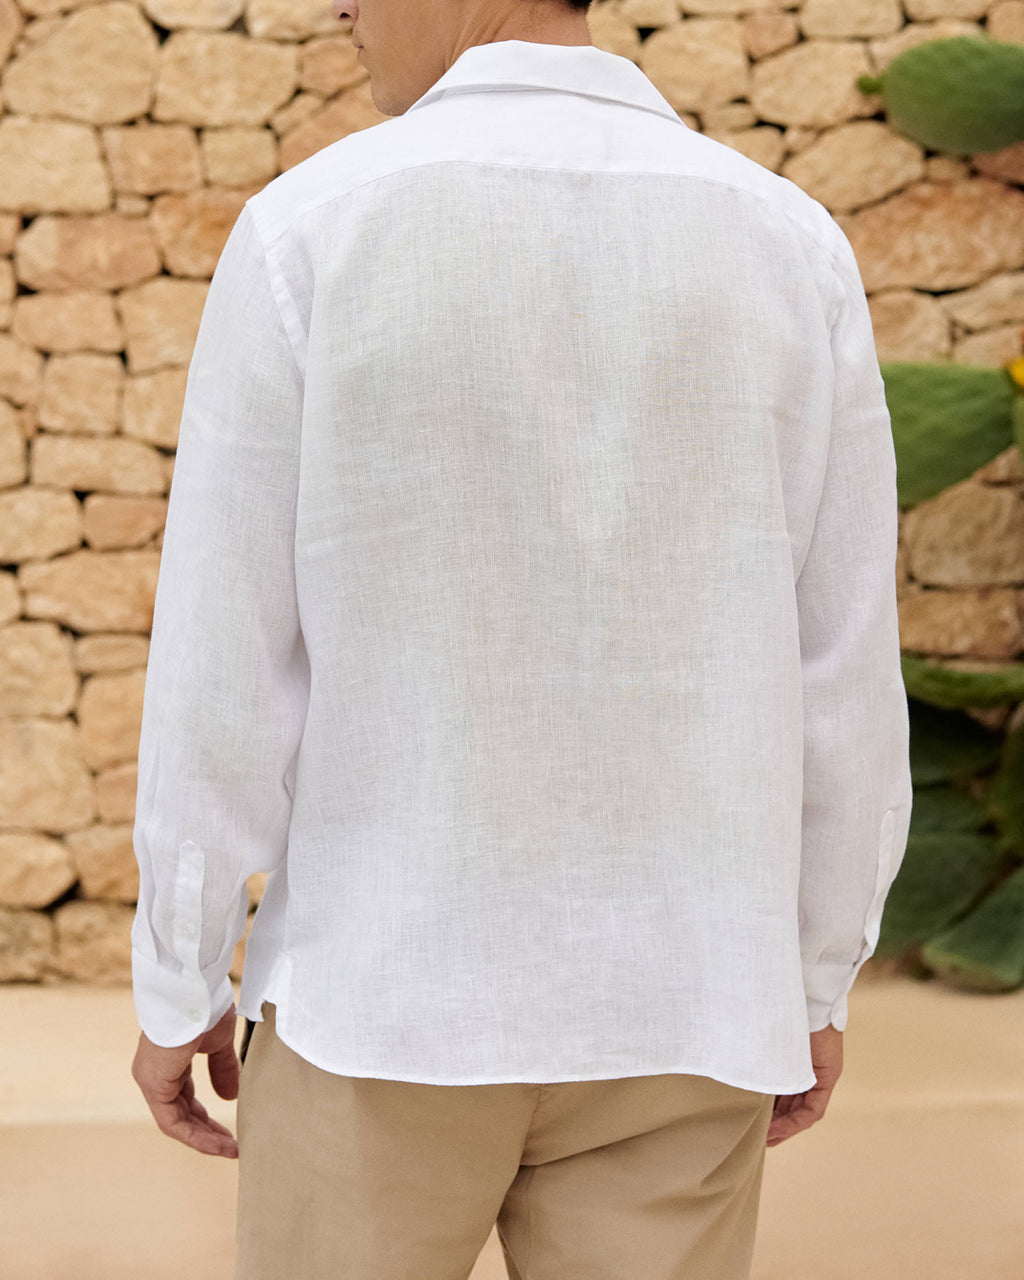 Panama Shirt - White